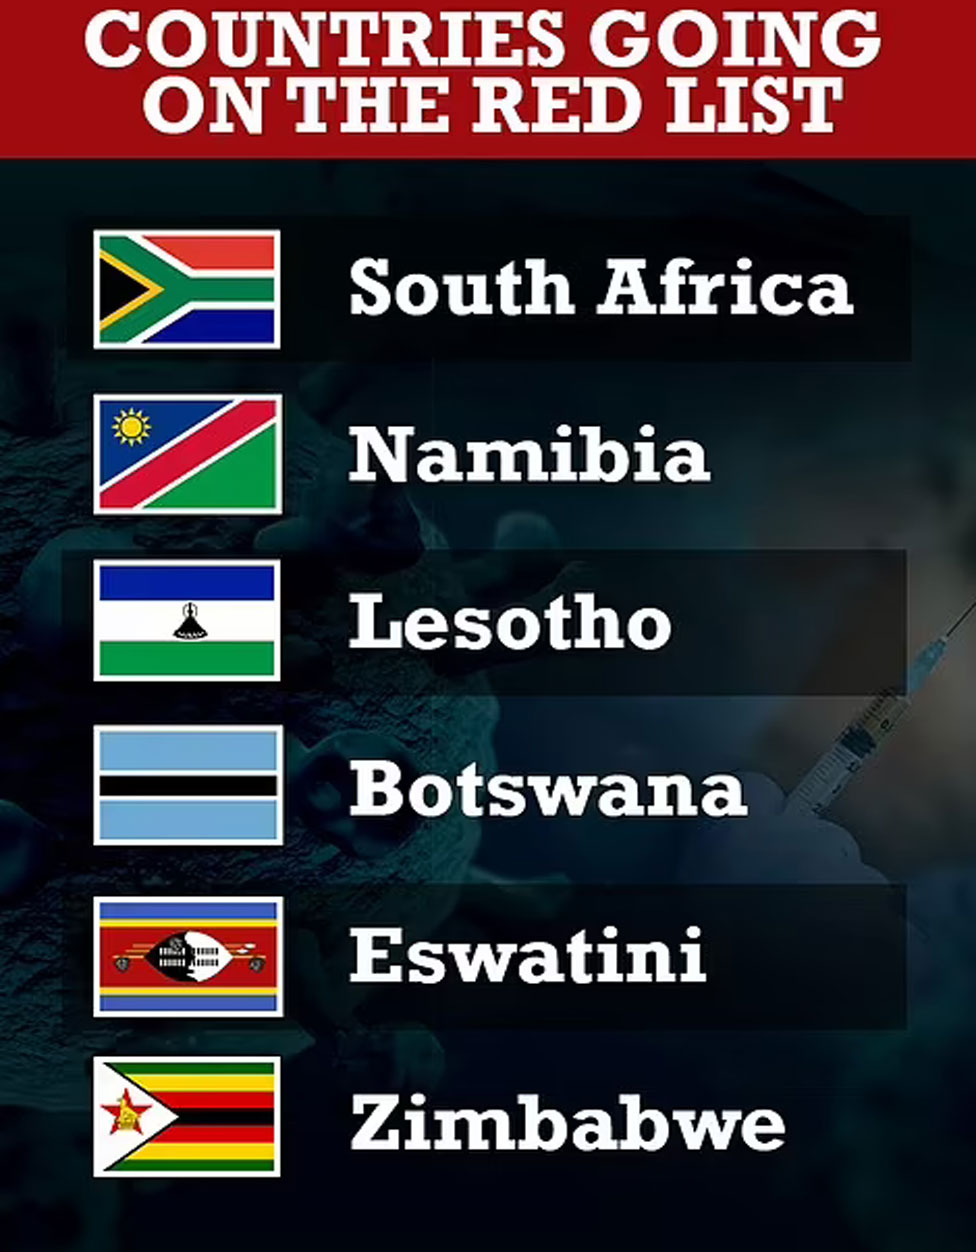 برطانیہ نے تو جنوبی افریقا ، لیسوتھو ، بوٹسوانا، نمیبیا، اسواتینی اور زمبابوے کو کورونا پابندیوں والی ریڈ لسٹ میں شامل کردیا ہے— فوٹو: ڈیلی میل